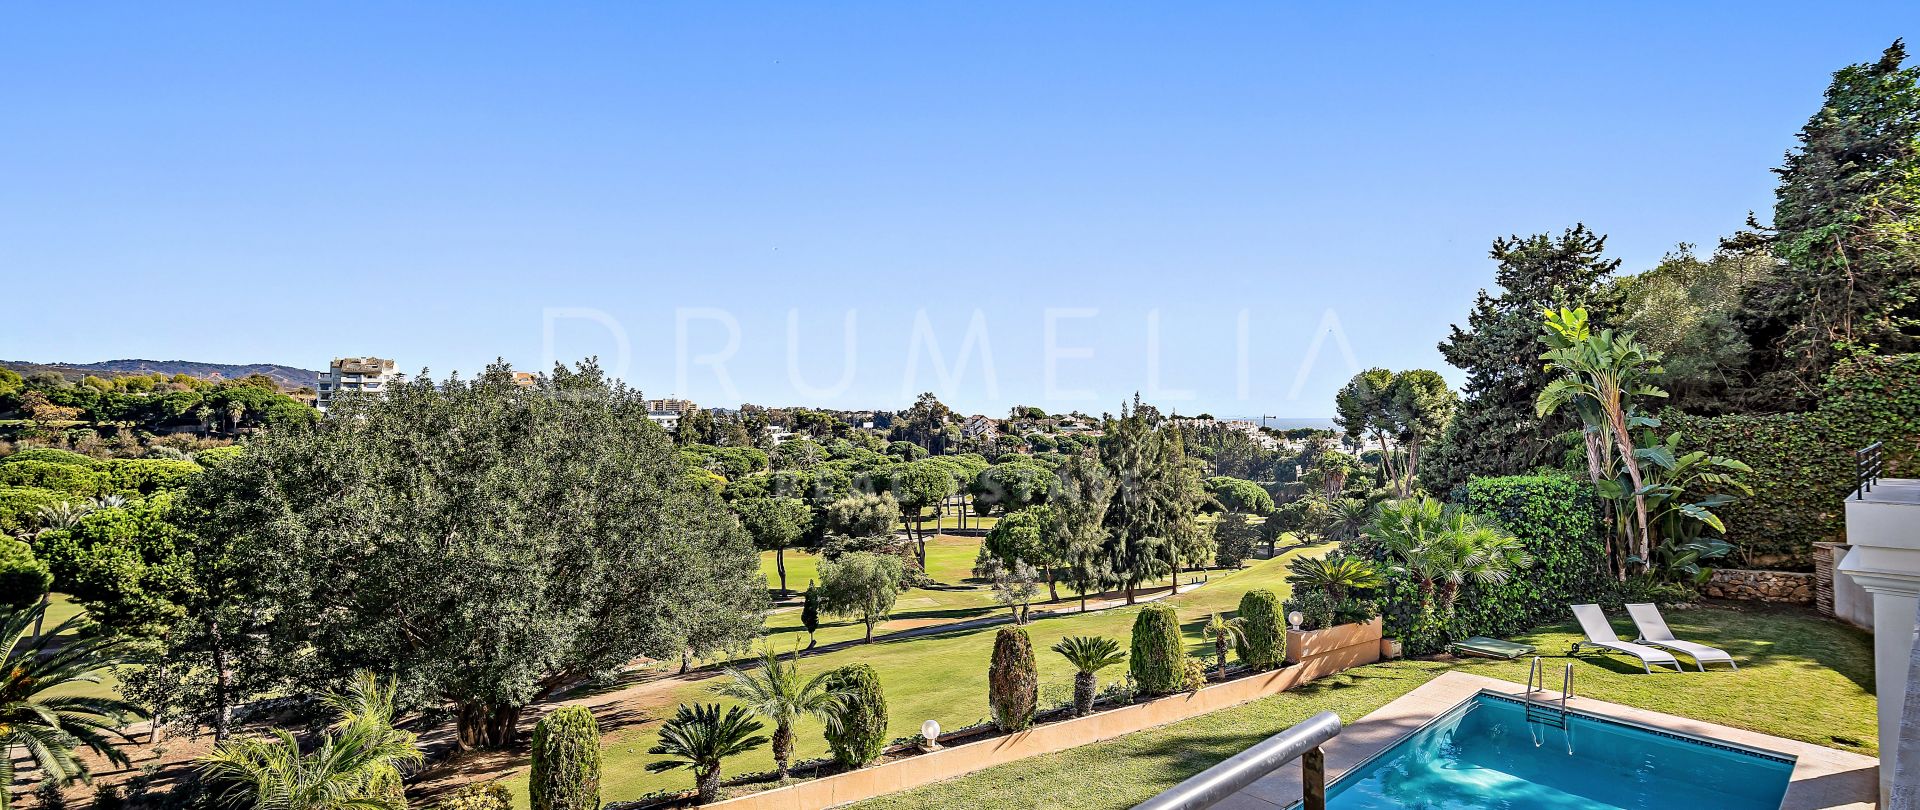 Villa for salg i Rio Real Golf, Marbella Øst